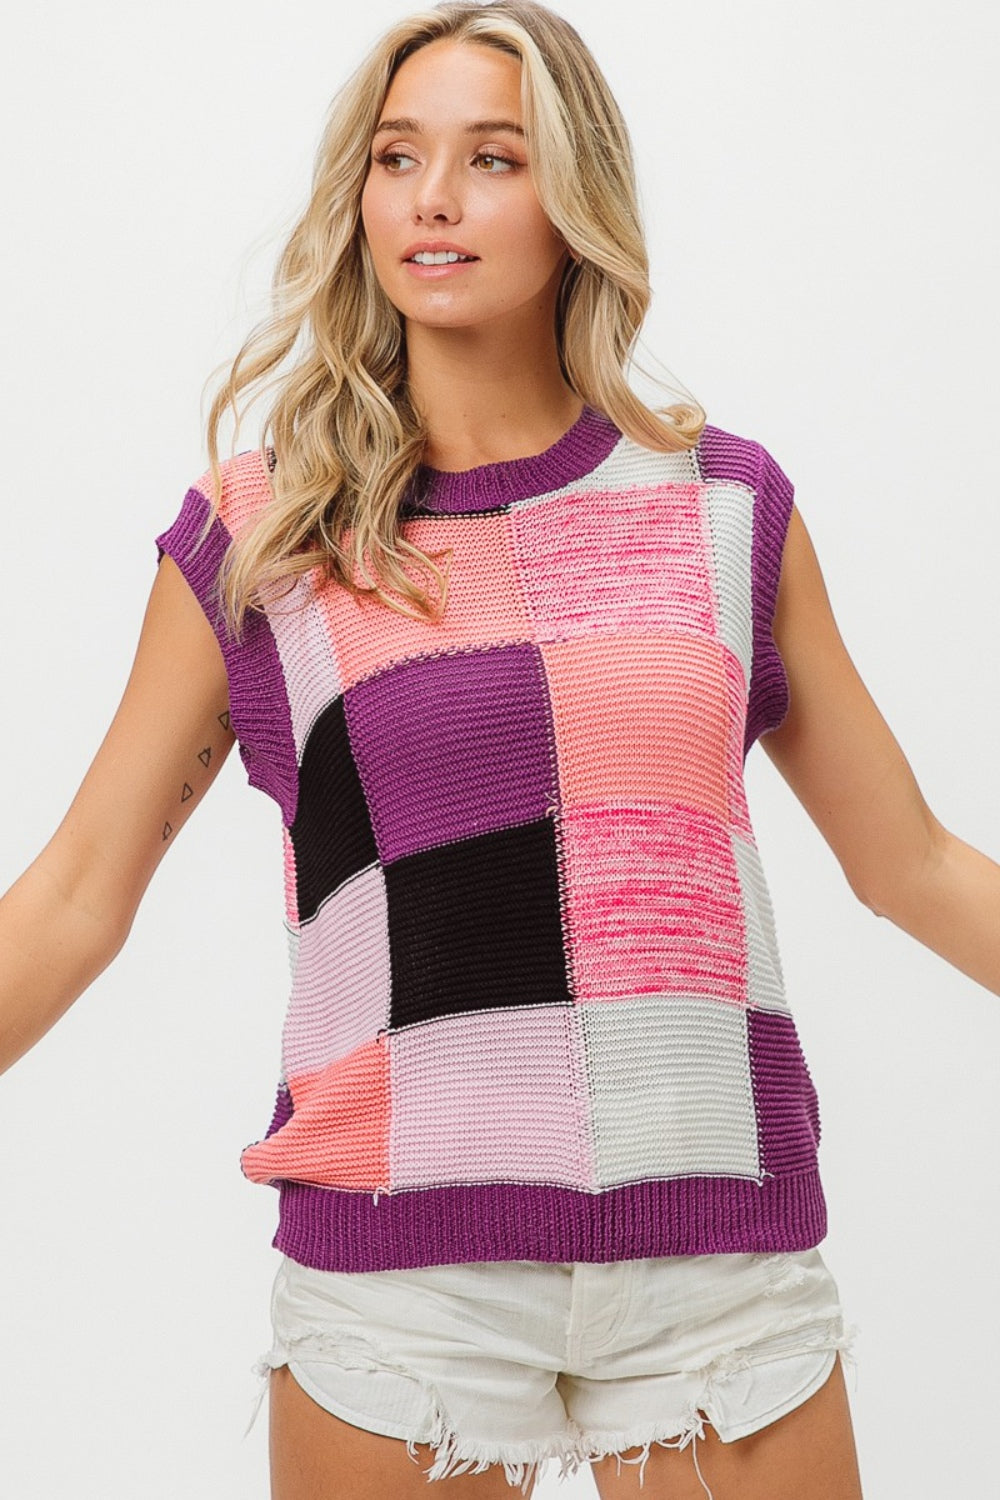 BiBi Purple Combo Color Block Sweater Vest